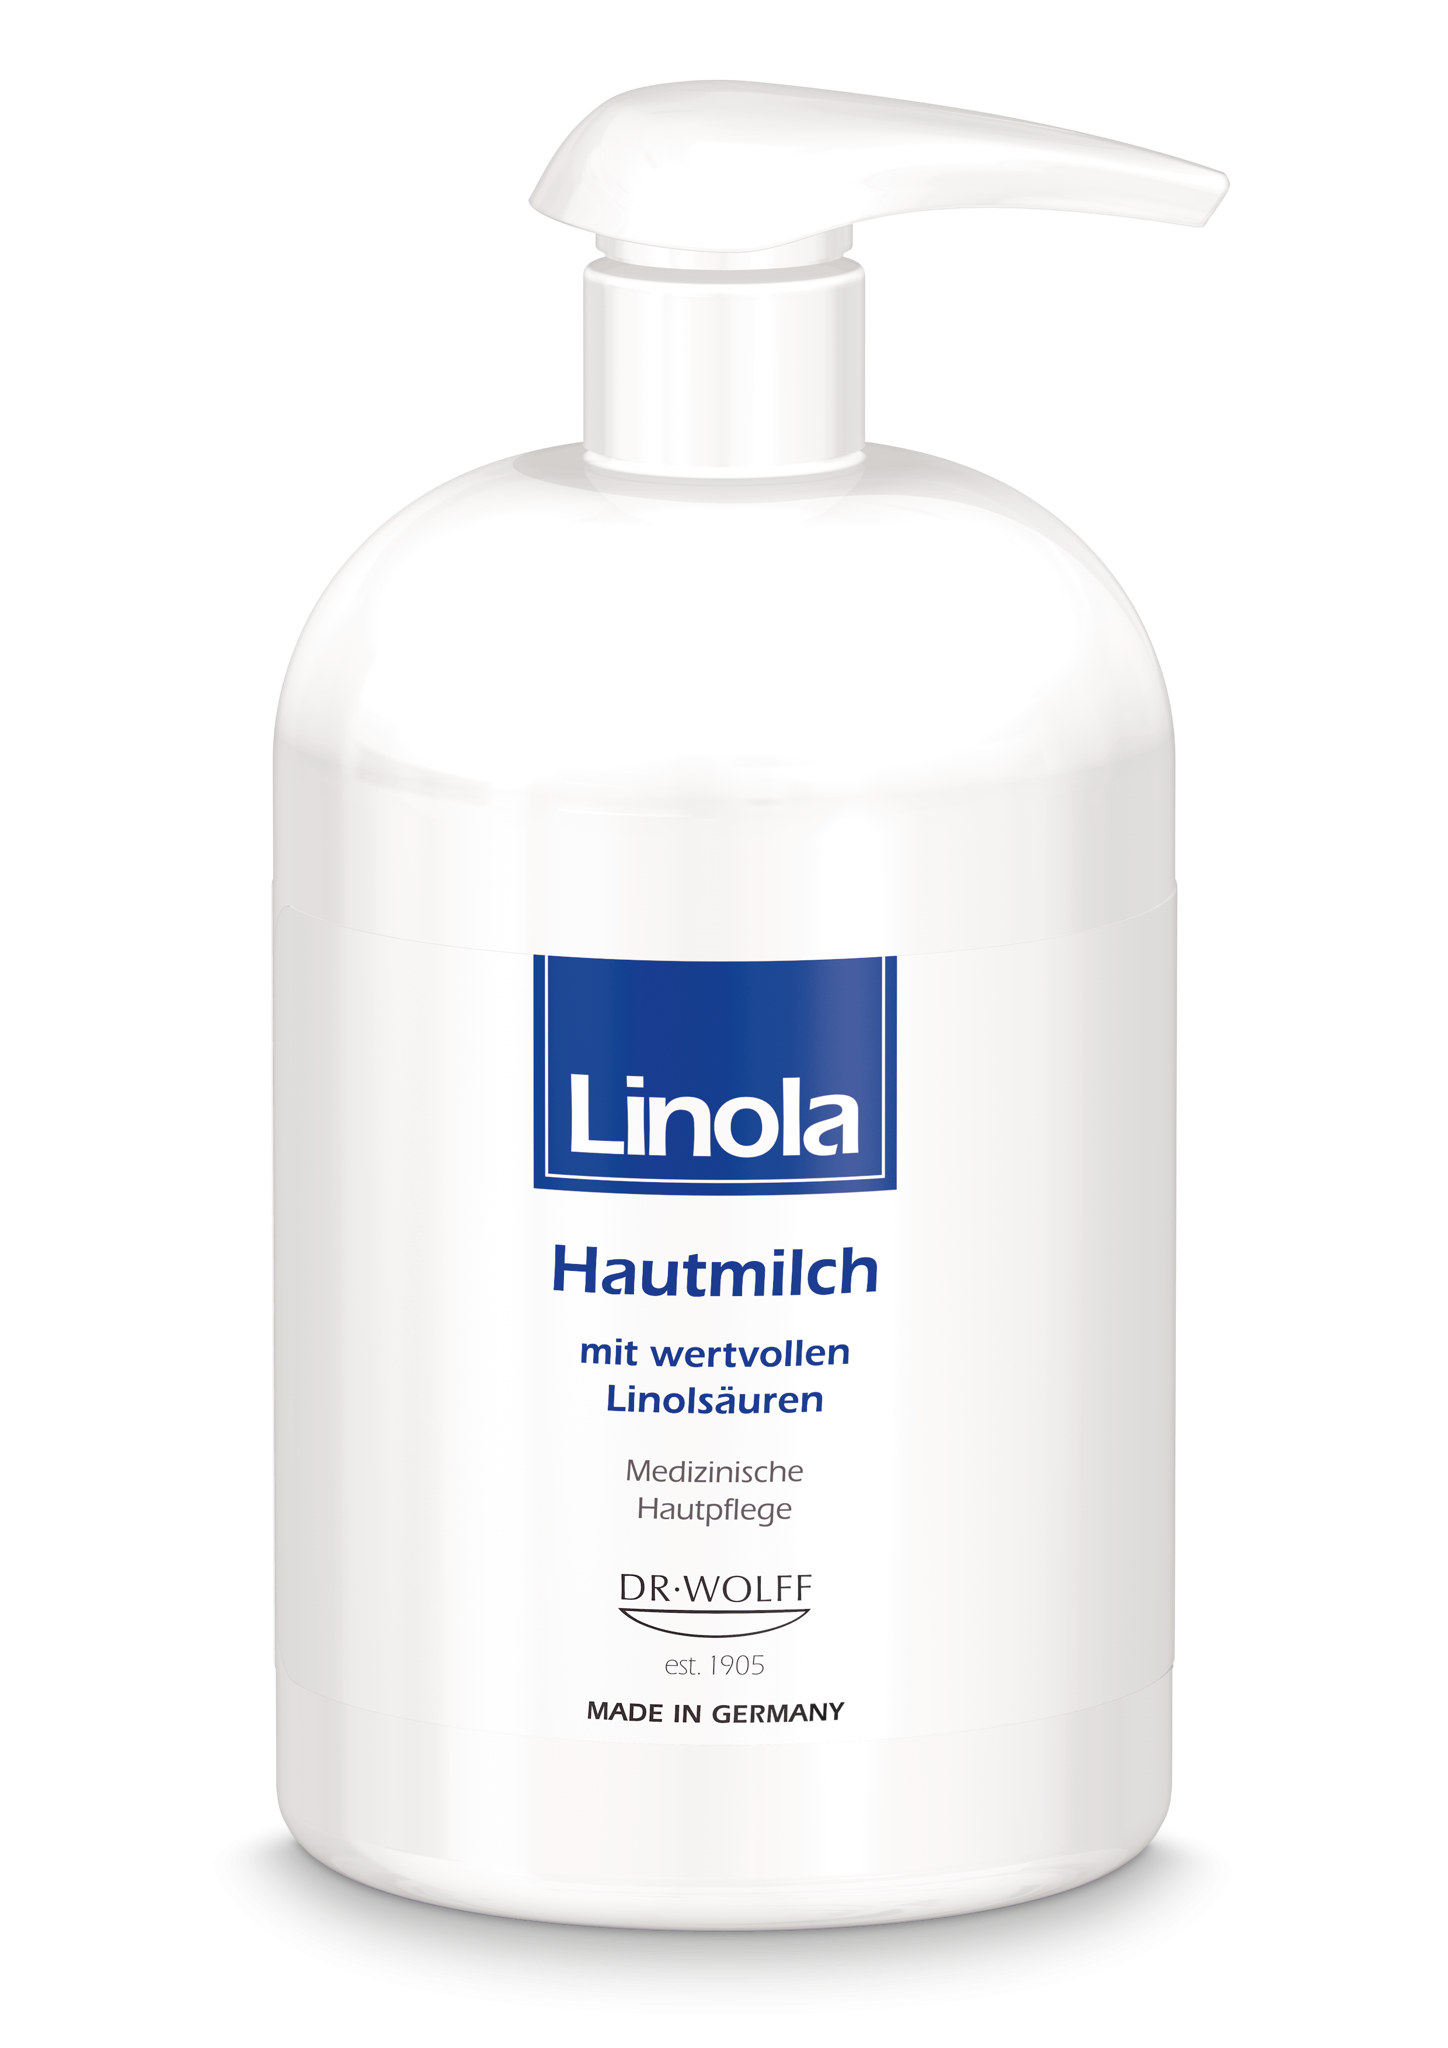 LINOLA Hautmilch Pumpspender 500ml